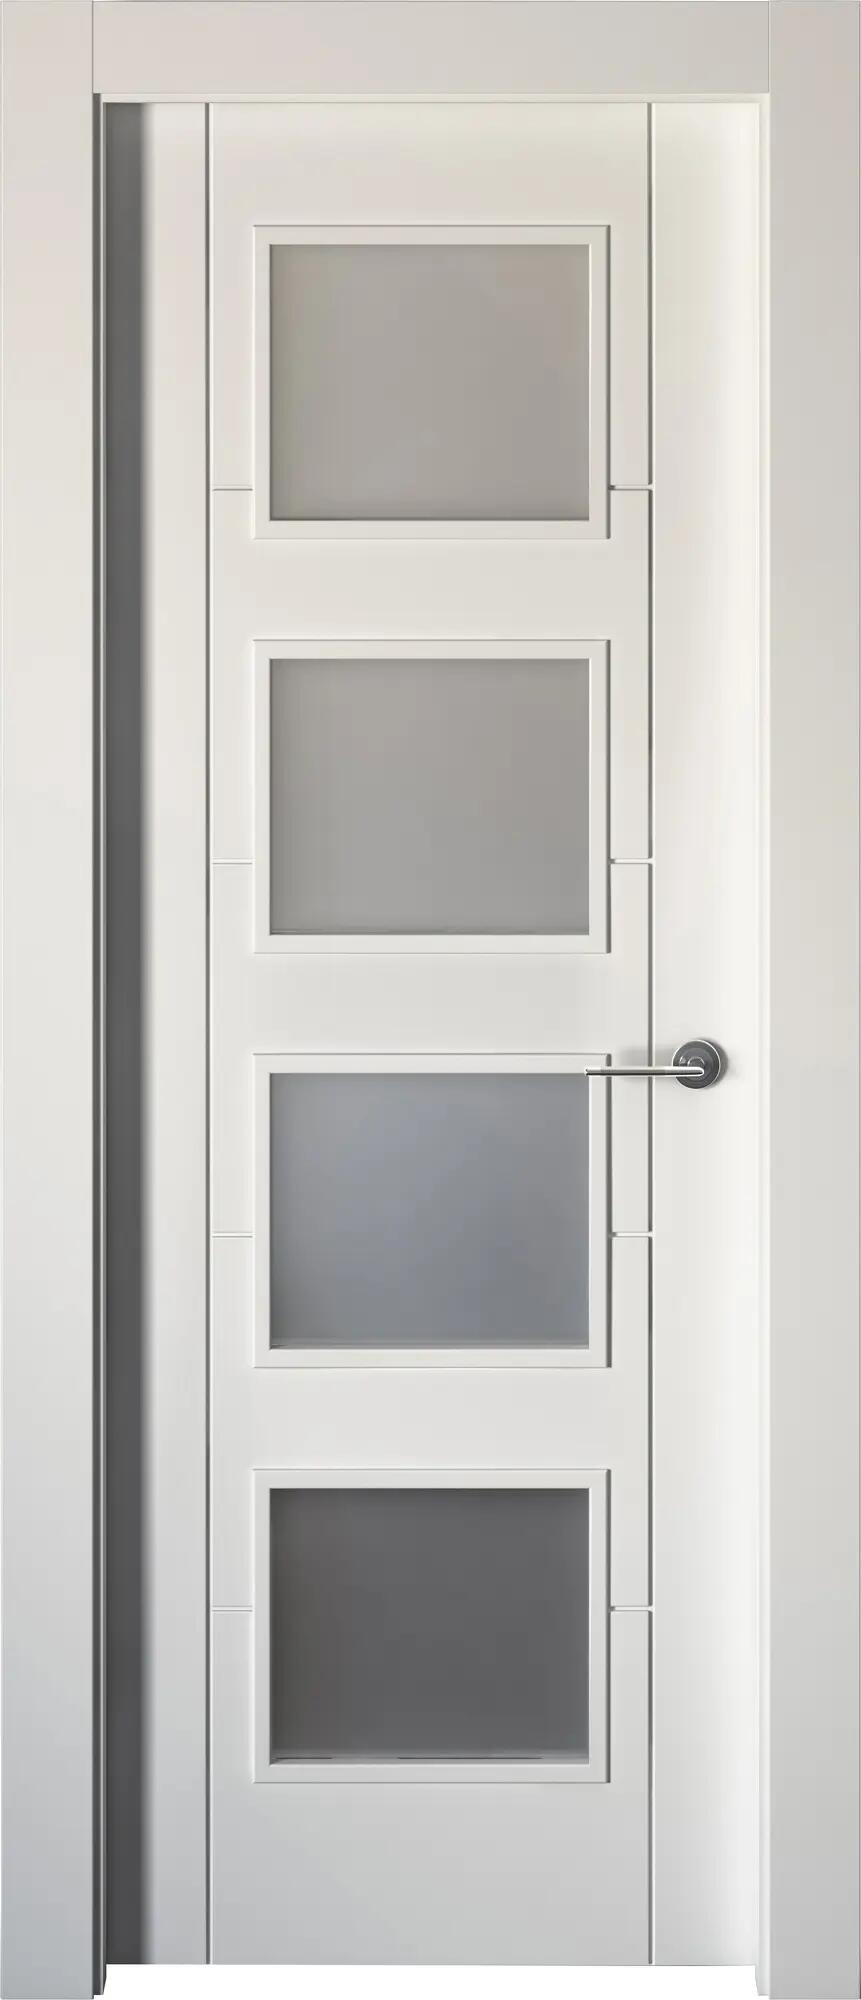 Puerta noruega plus blanco apertura izquierda con cristal 9x72.5cm